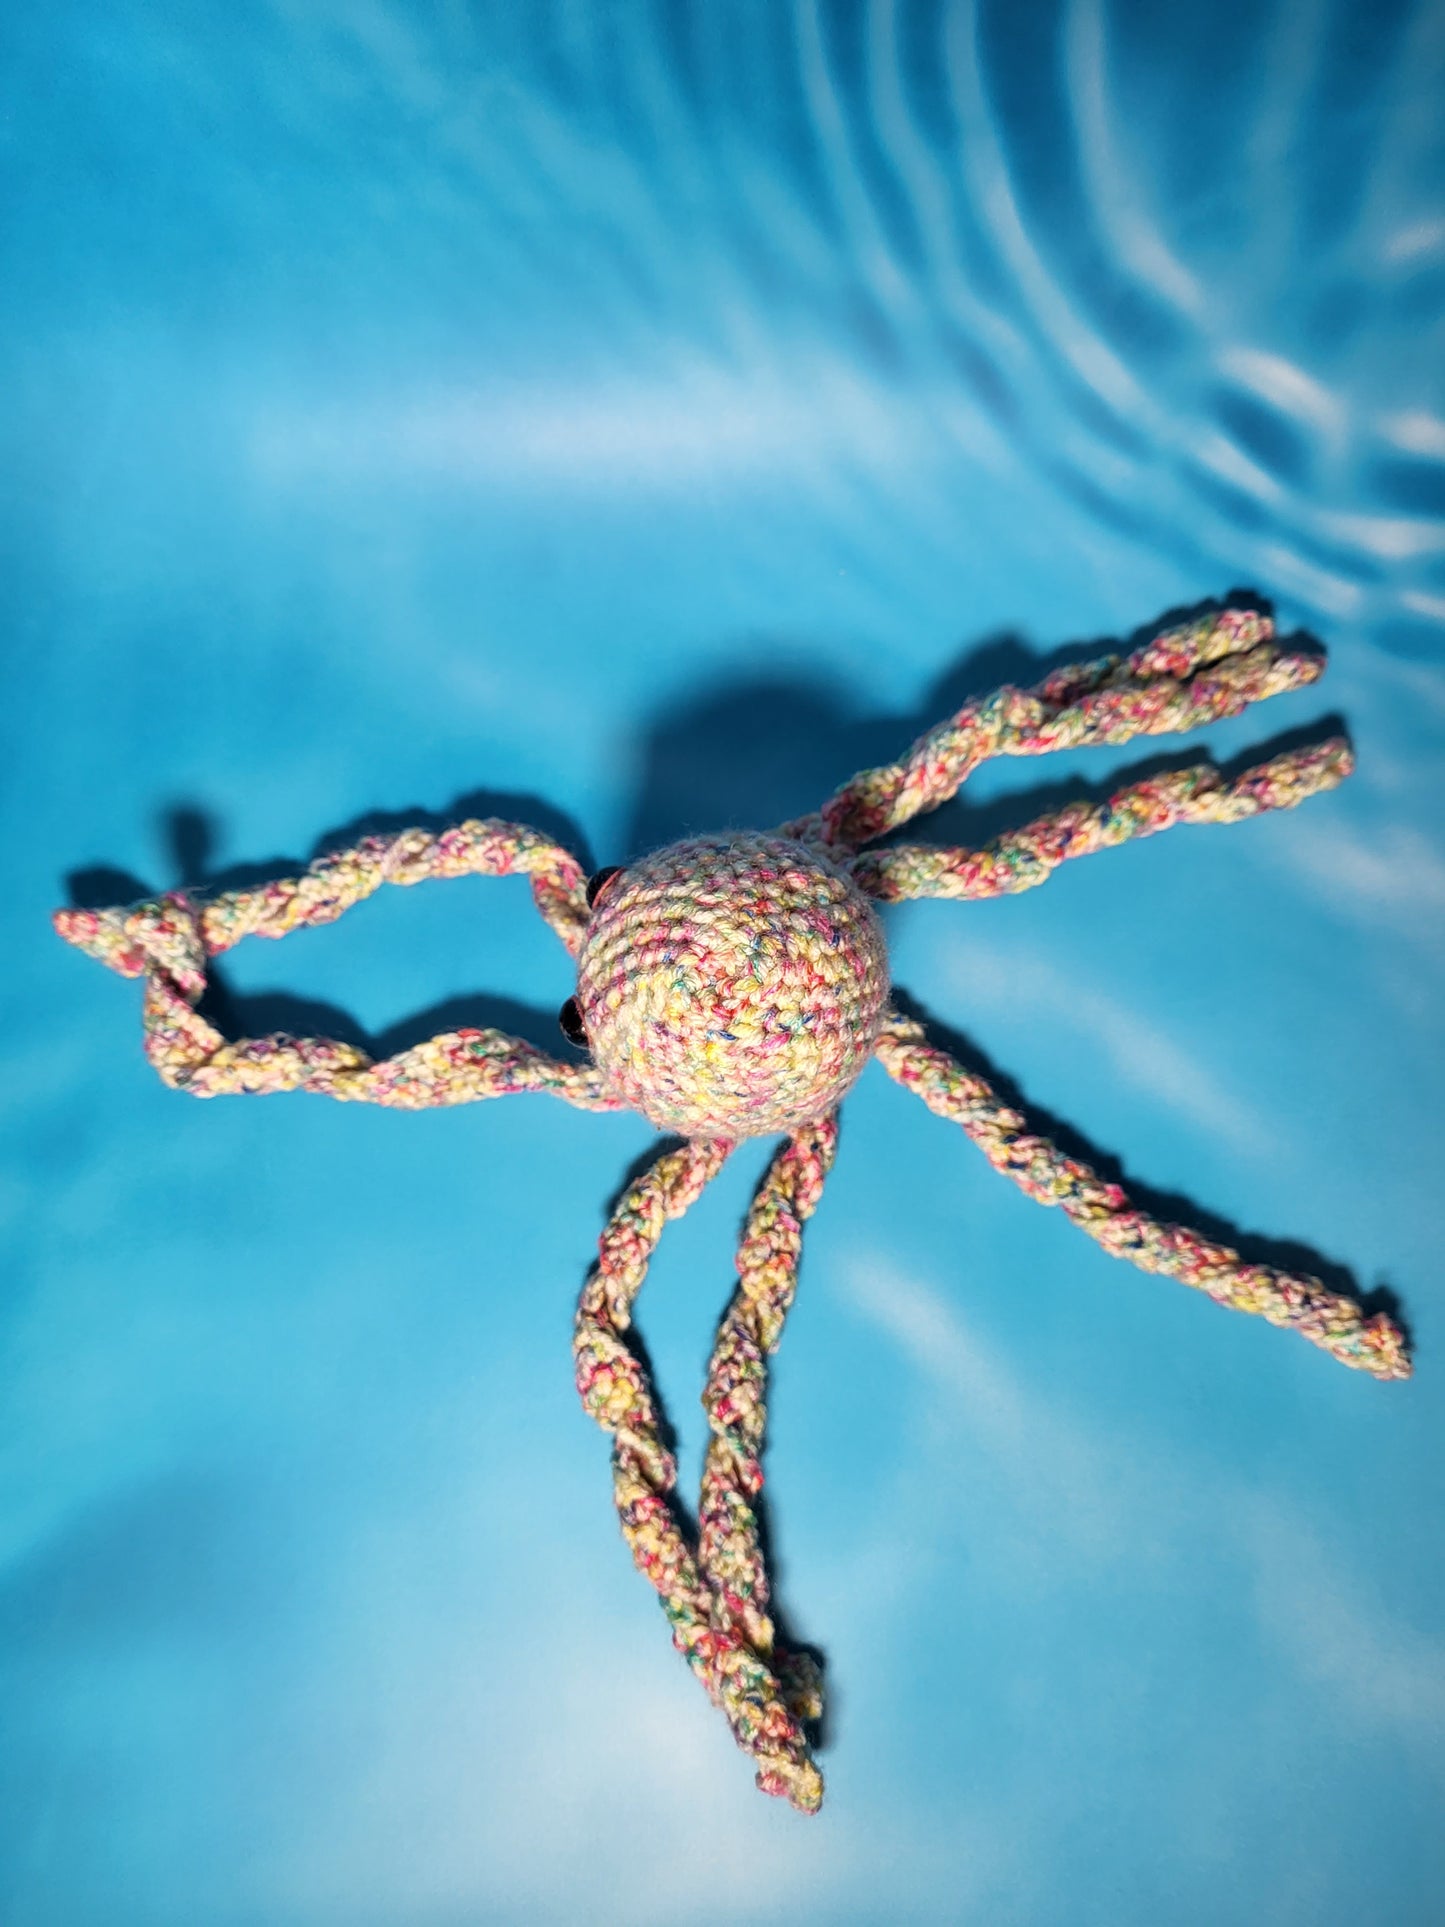 Small Crochet Octopus